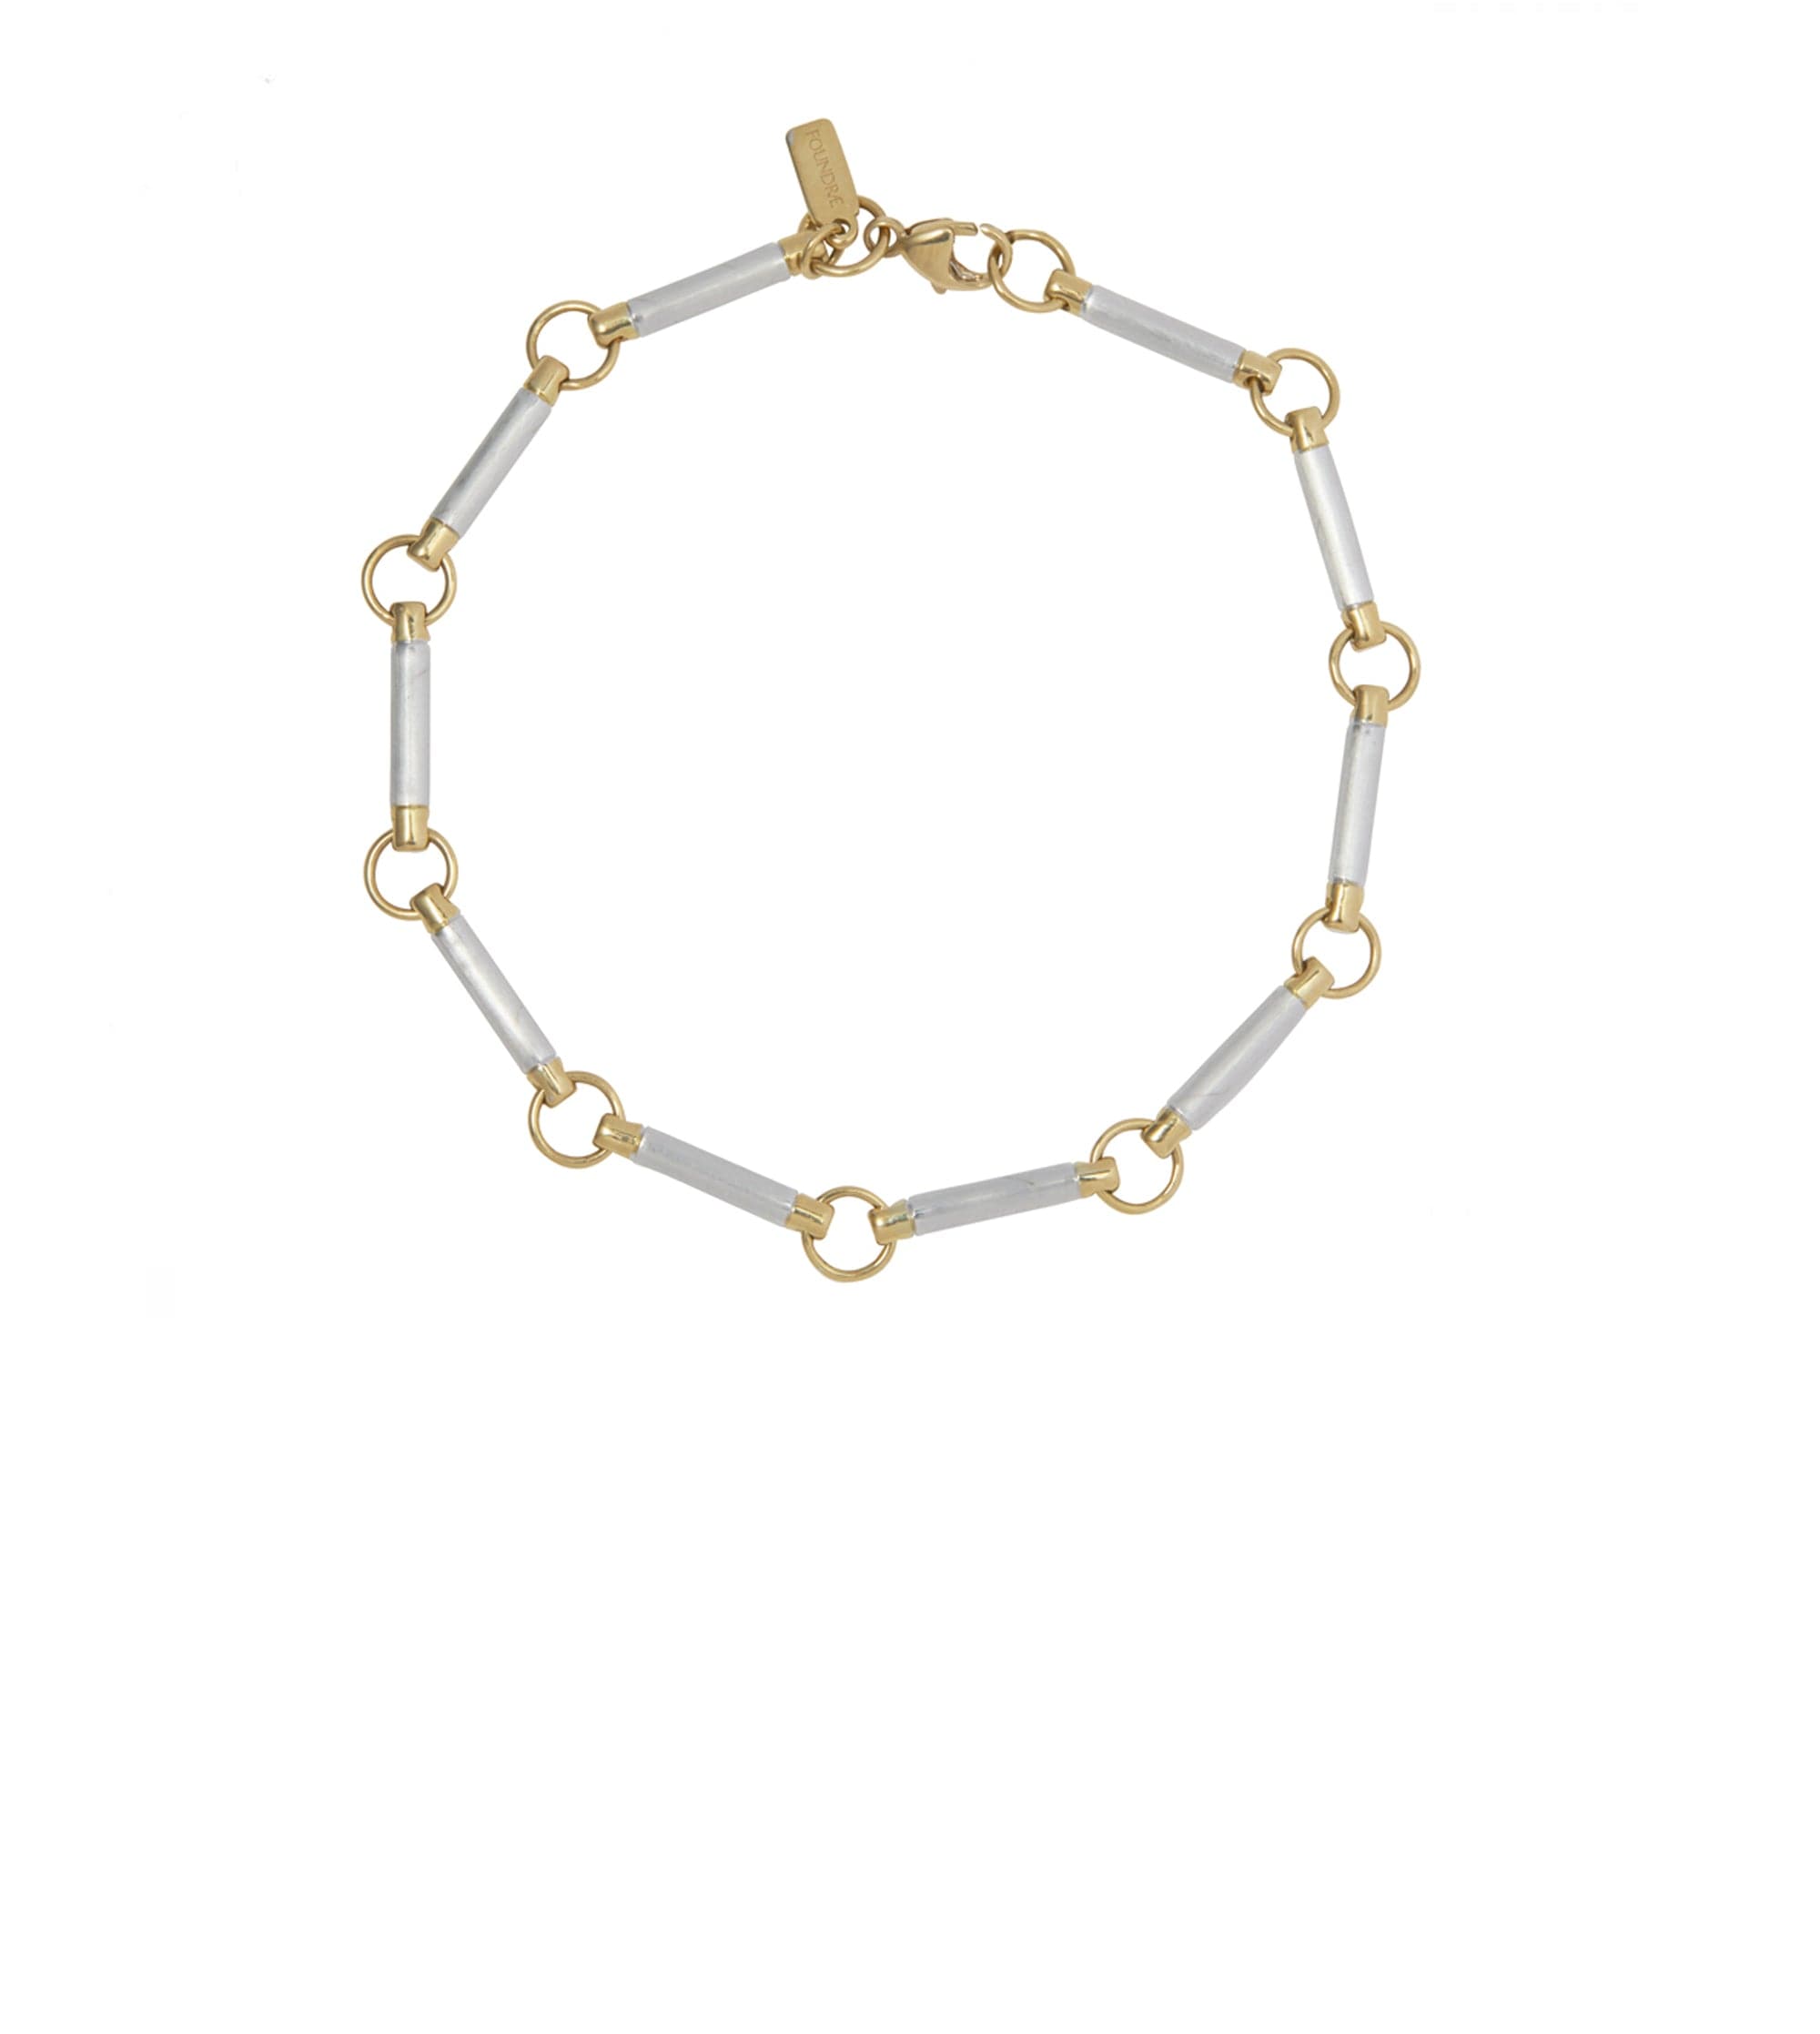 Gold Element Chain Bracelet